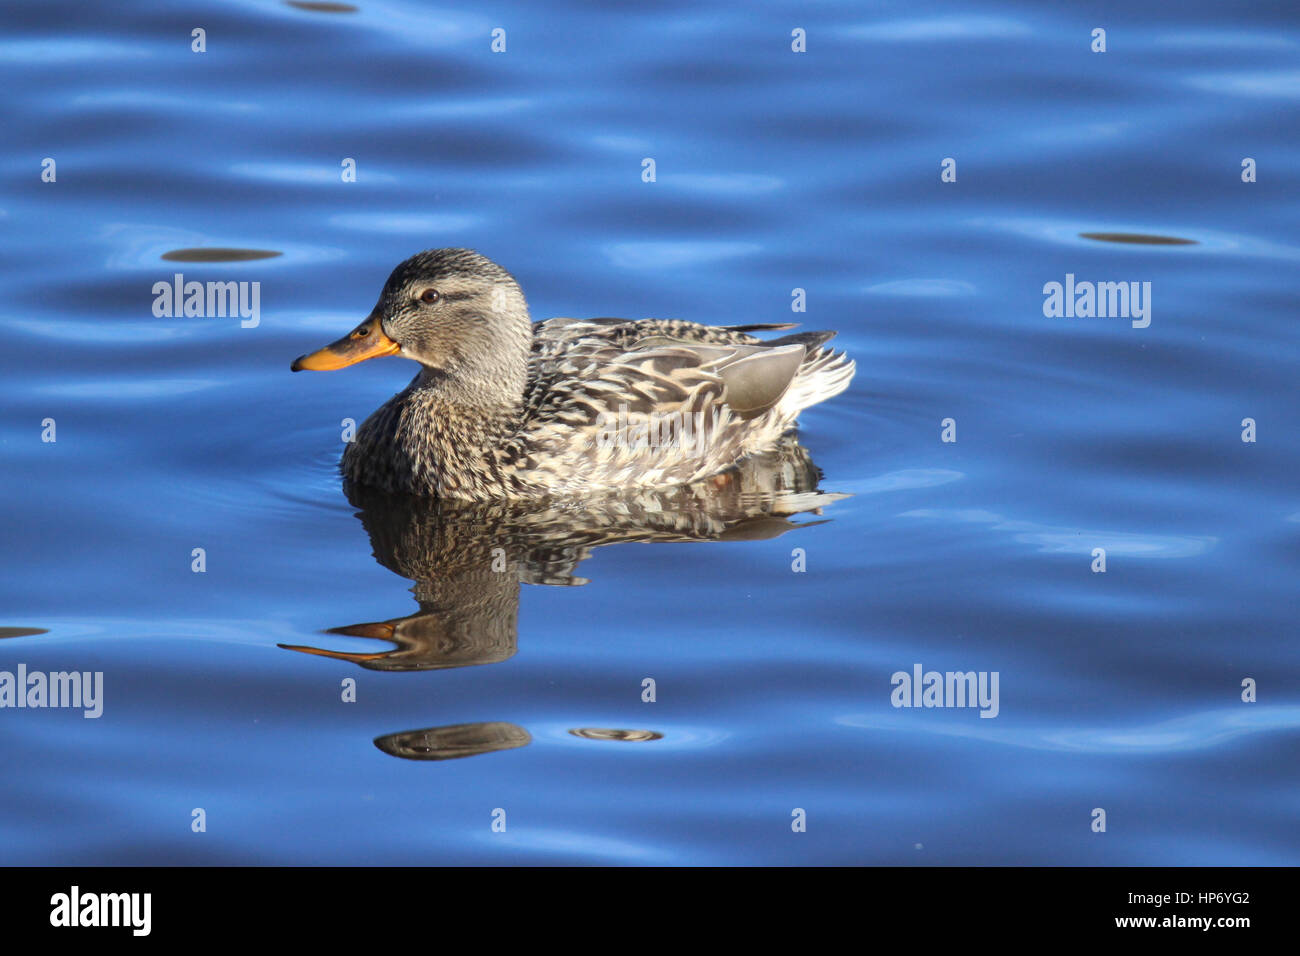 A female mallard duck swimming on a lake Stock Photo